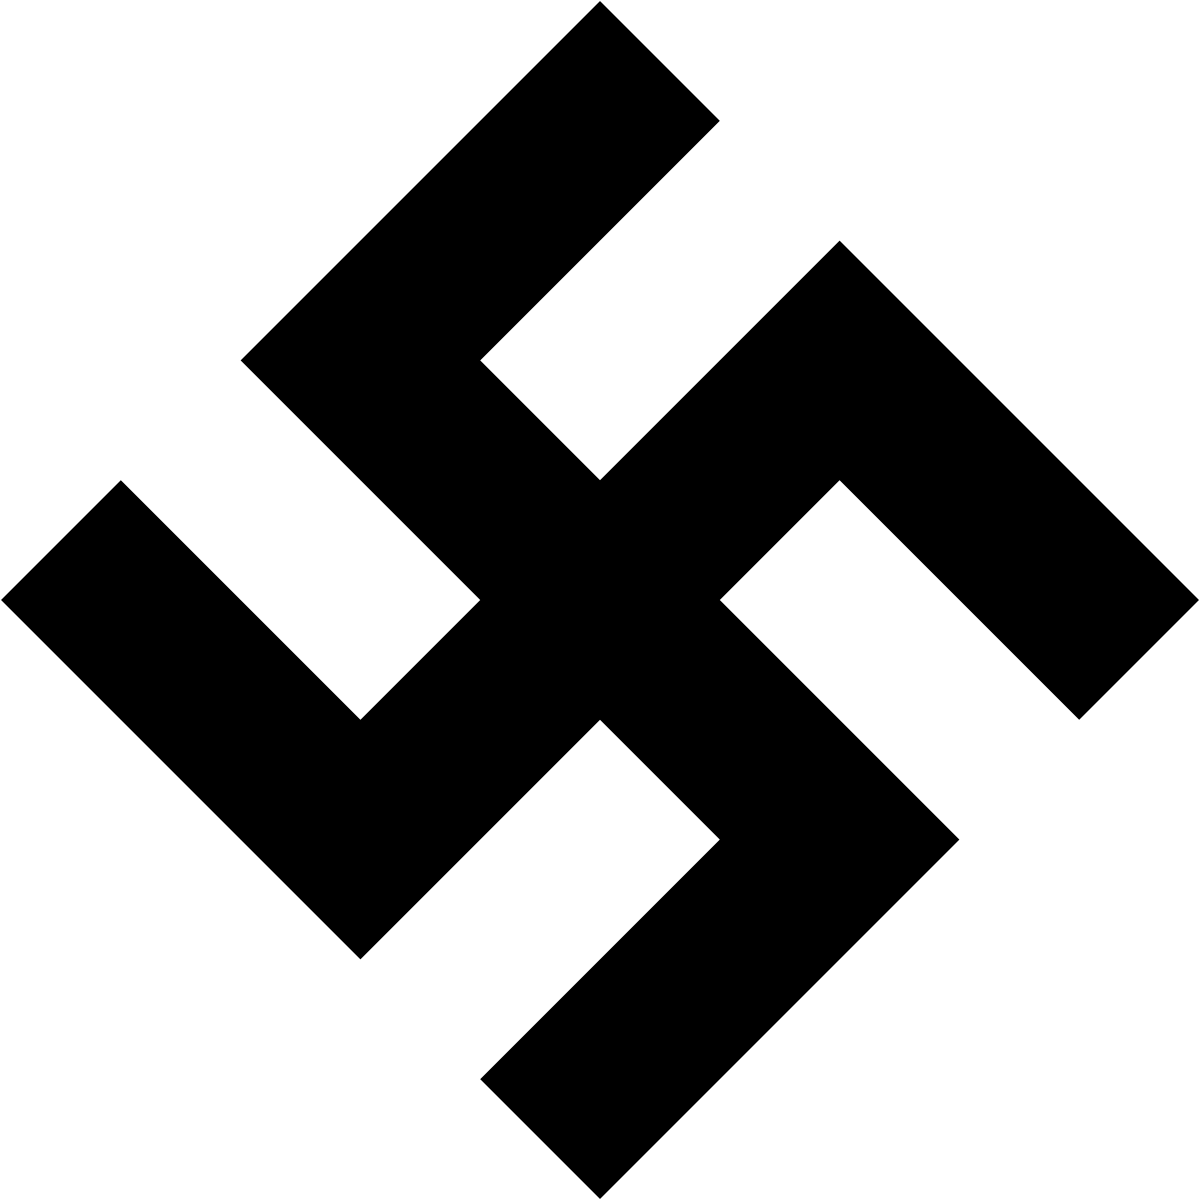 Hitler Logo - Nazi symbolism